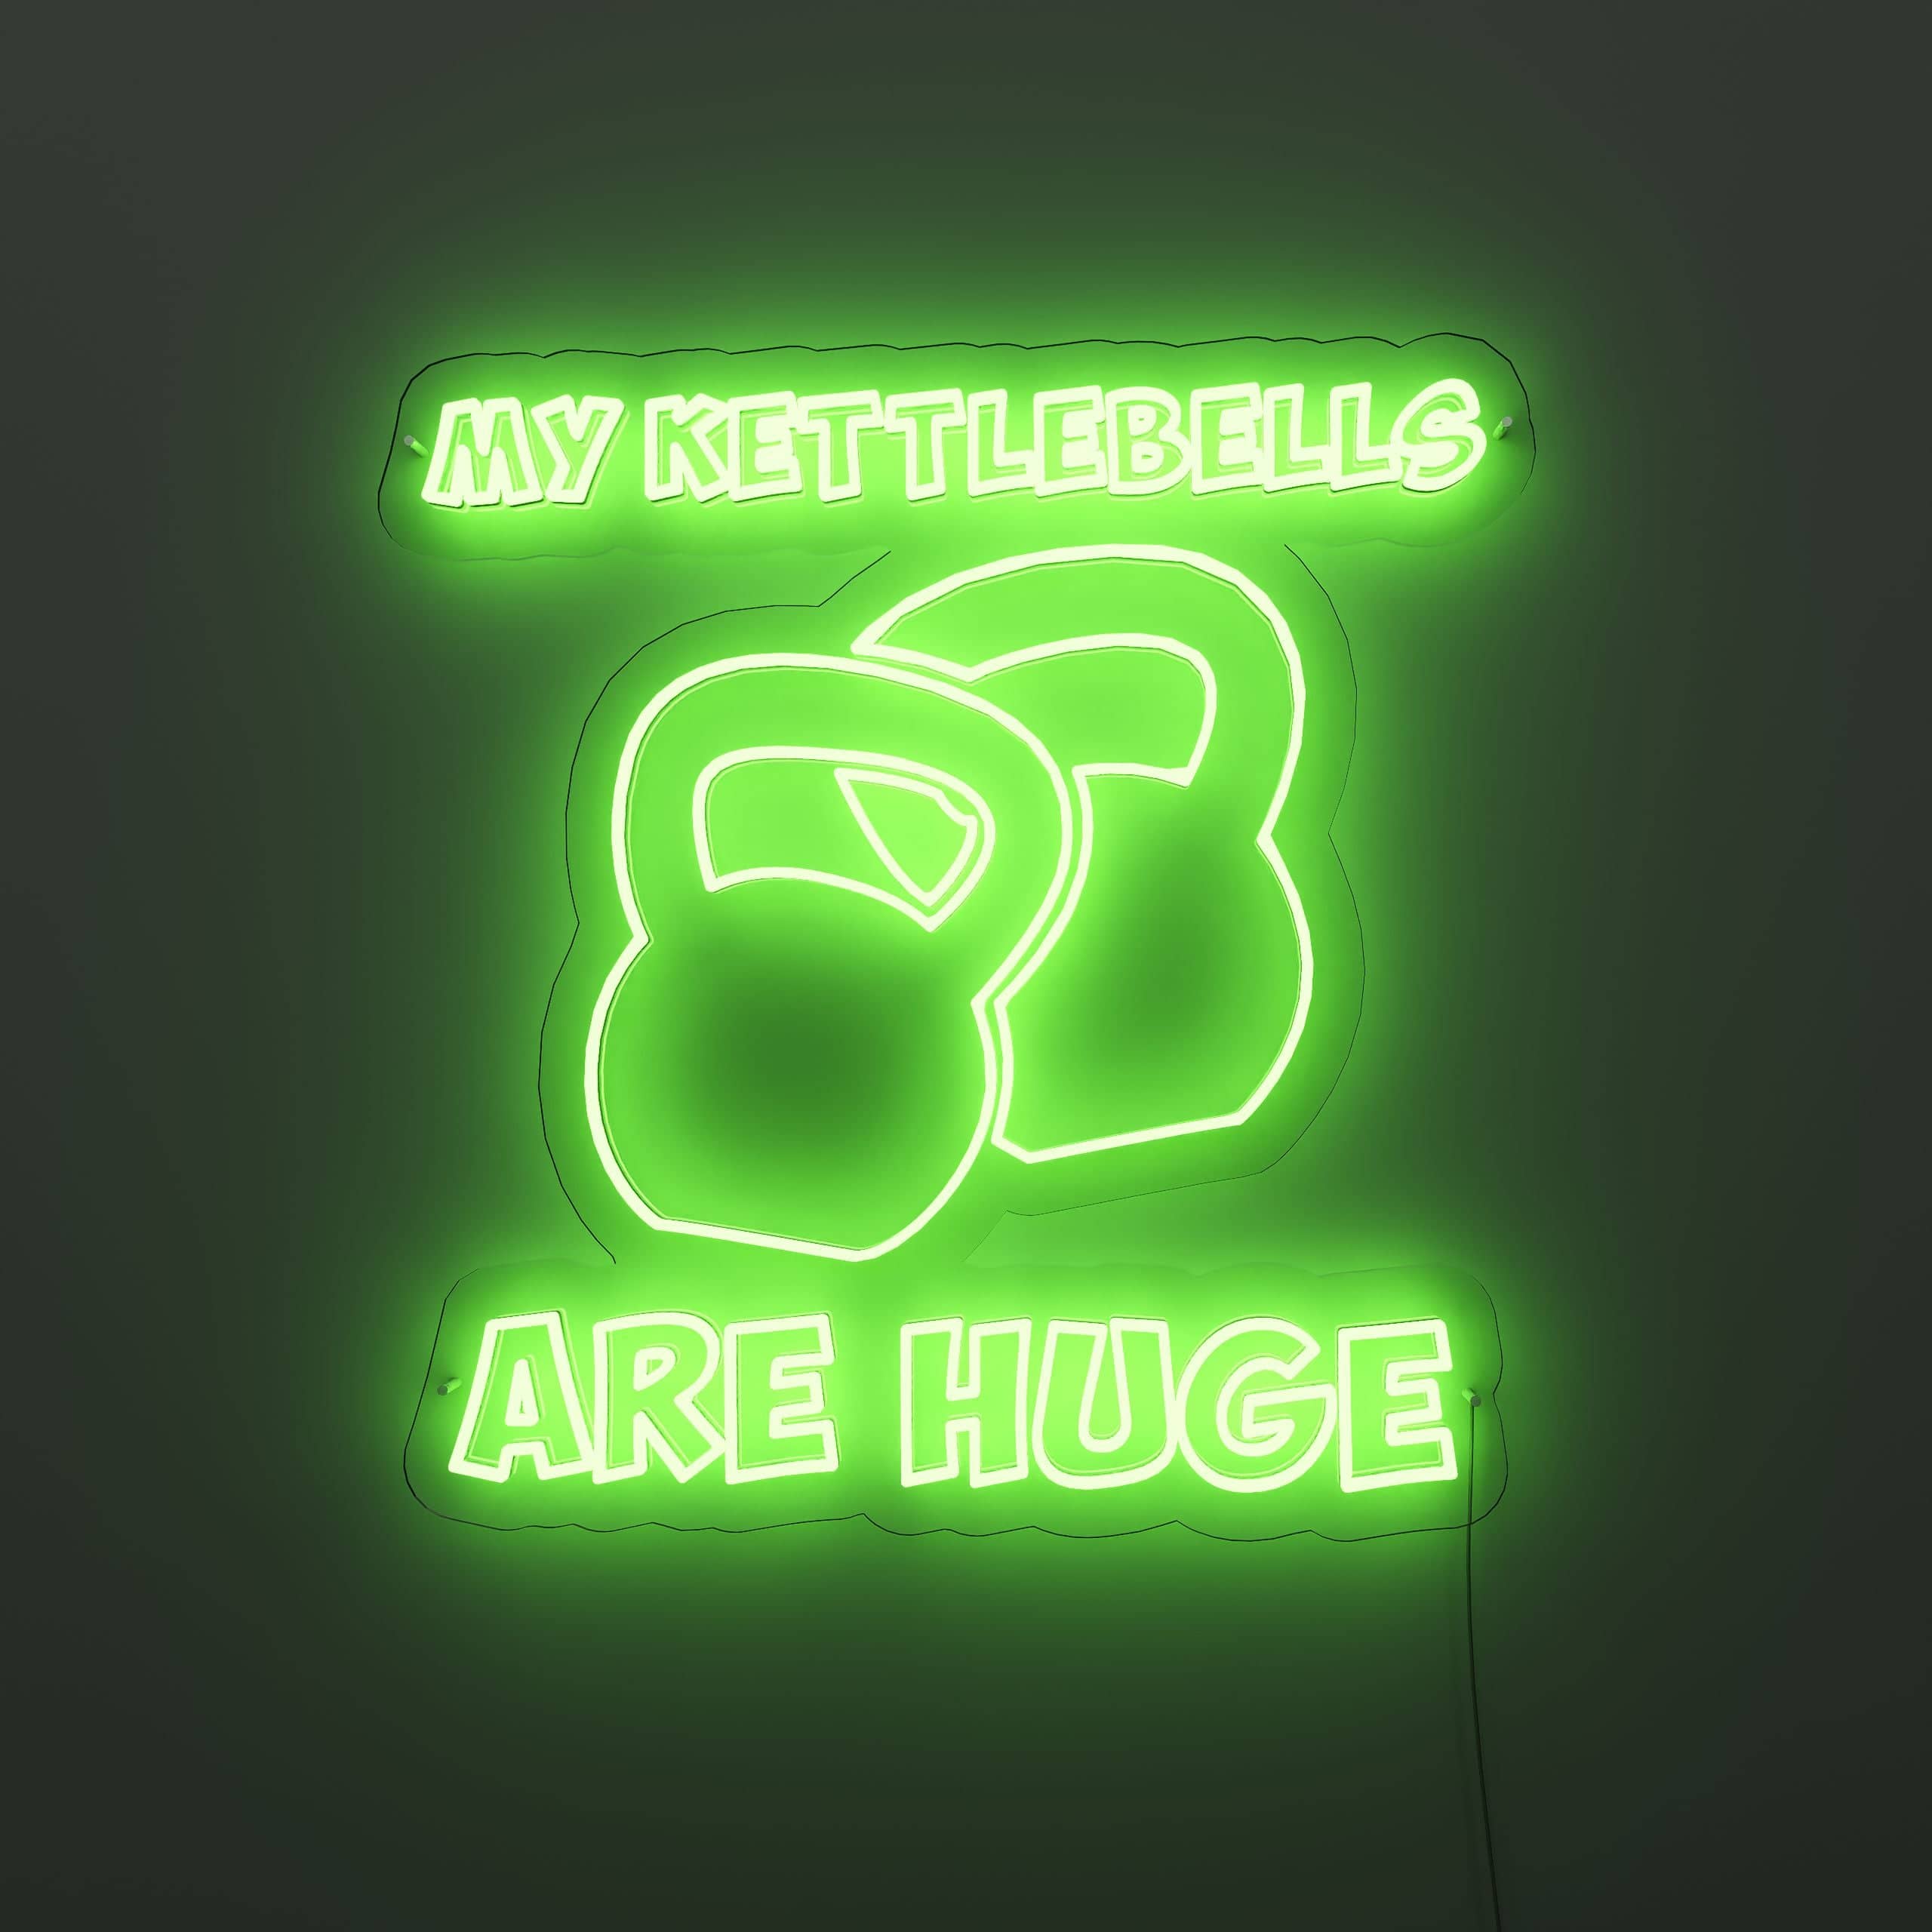 big-kettlebell-set-neon-sign-lite